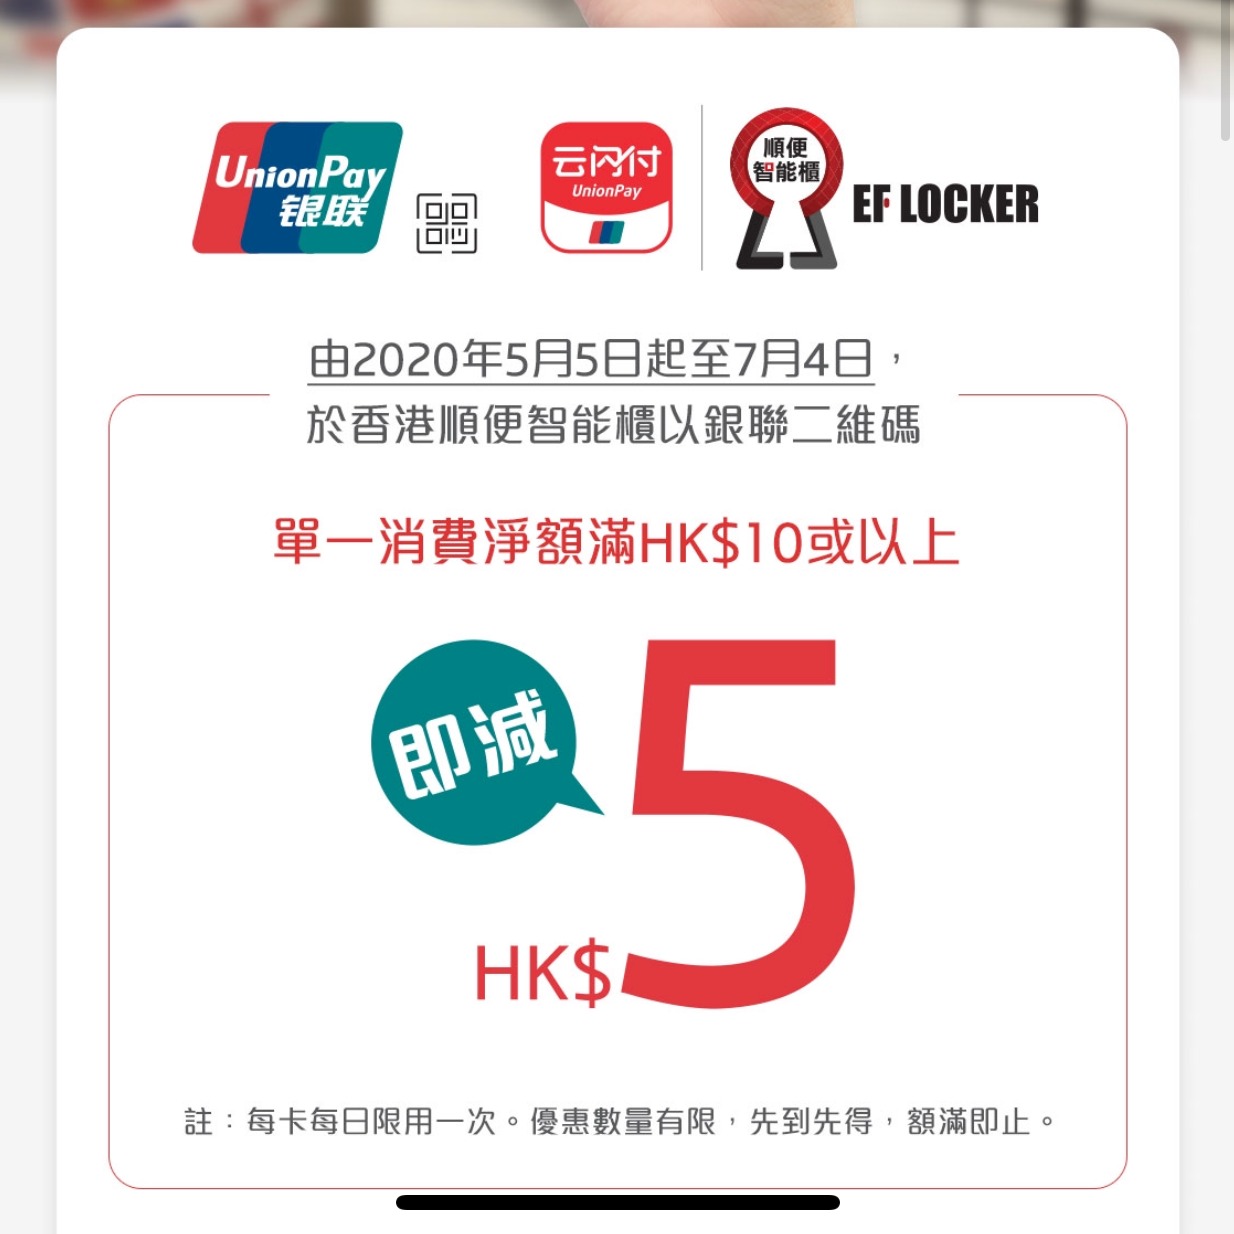 銀聯二維碼 x 順便智能櫃即減優惠！消費滿HK$10即減HK$5！